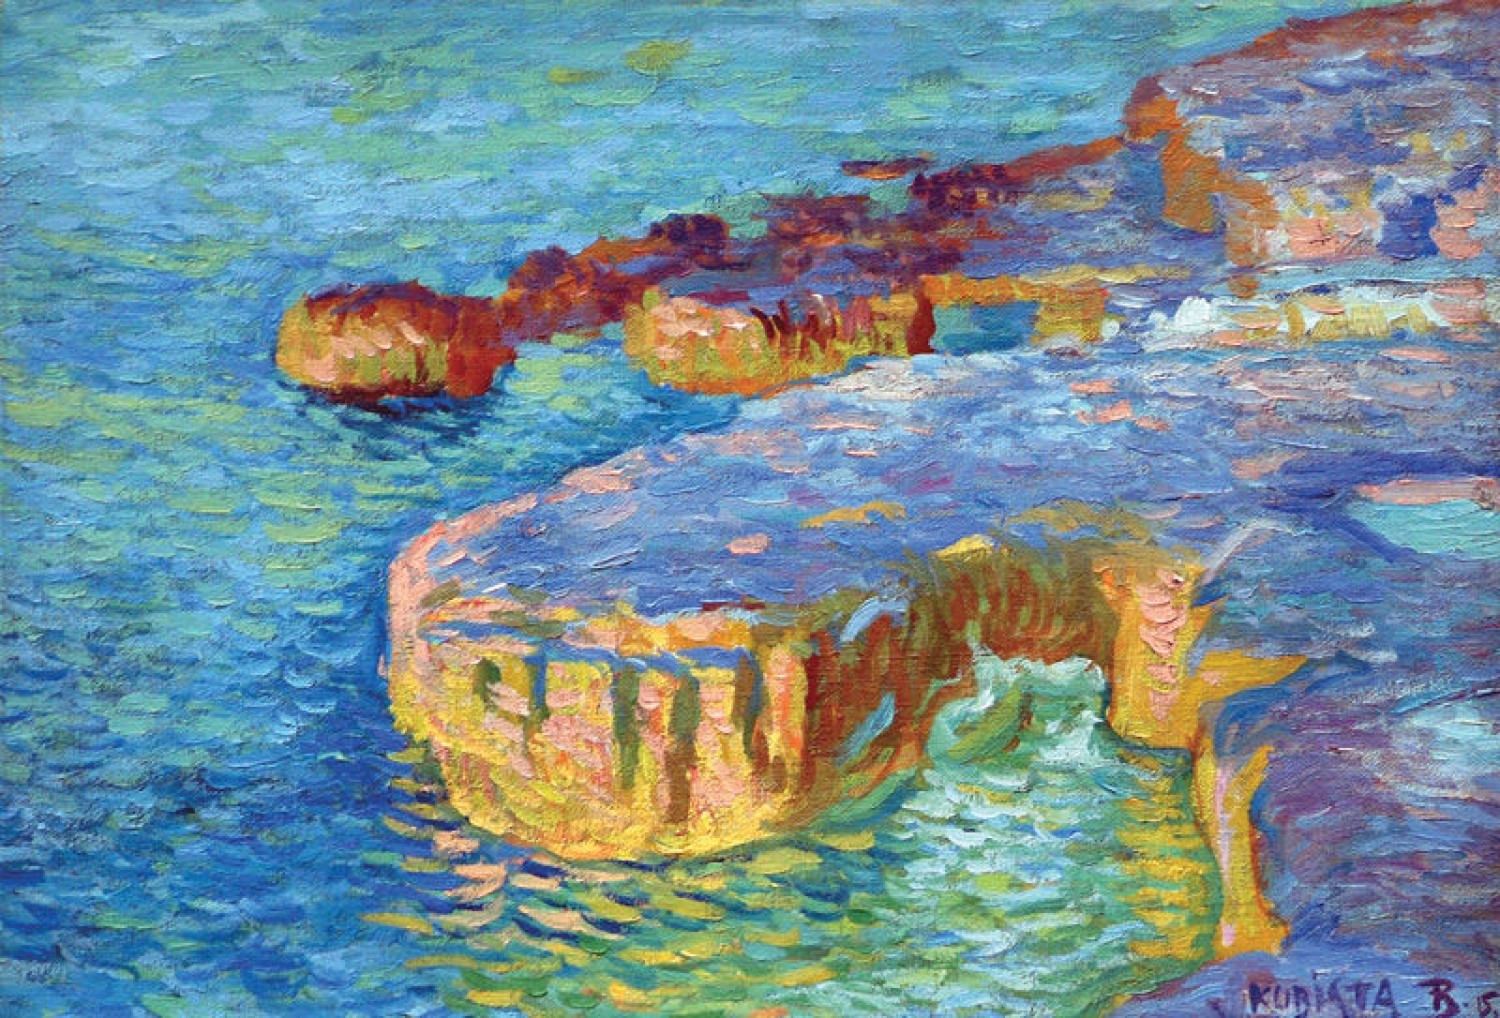 Skalnaté pobřeží (Moře), 1915, olej na plátně, 36 x 52 cm, 1. Art Consulting 28.1.2007, cena: 3 658 000 Kč